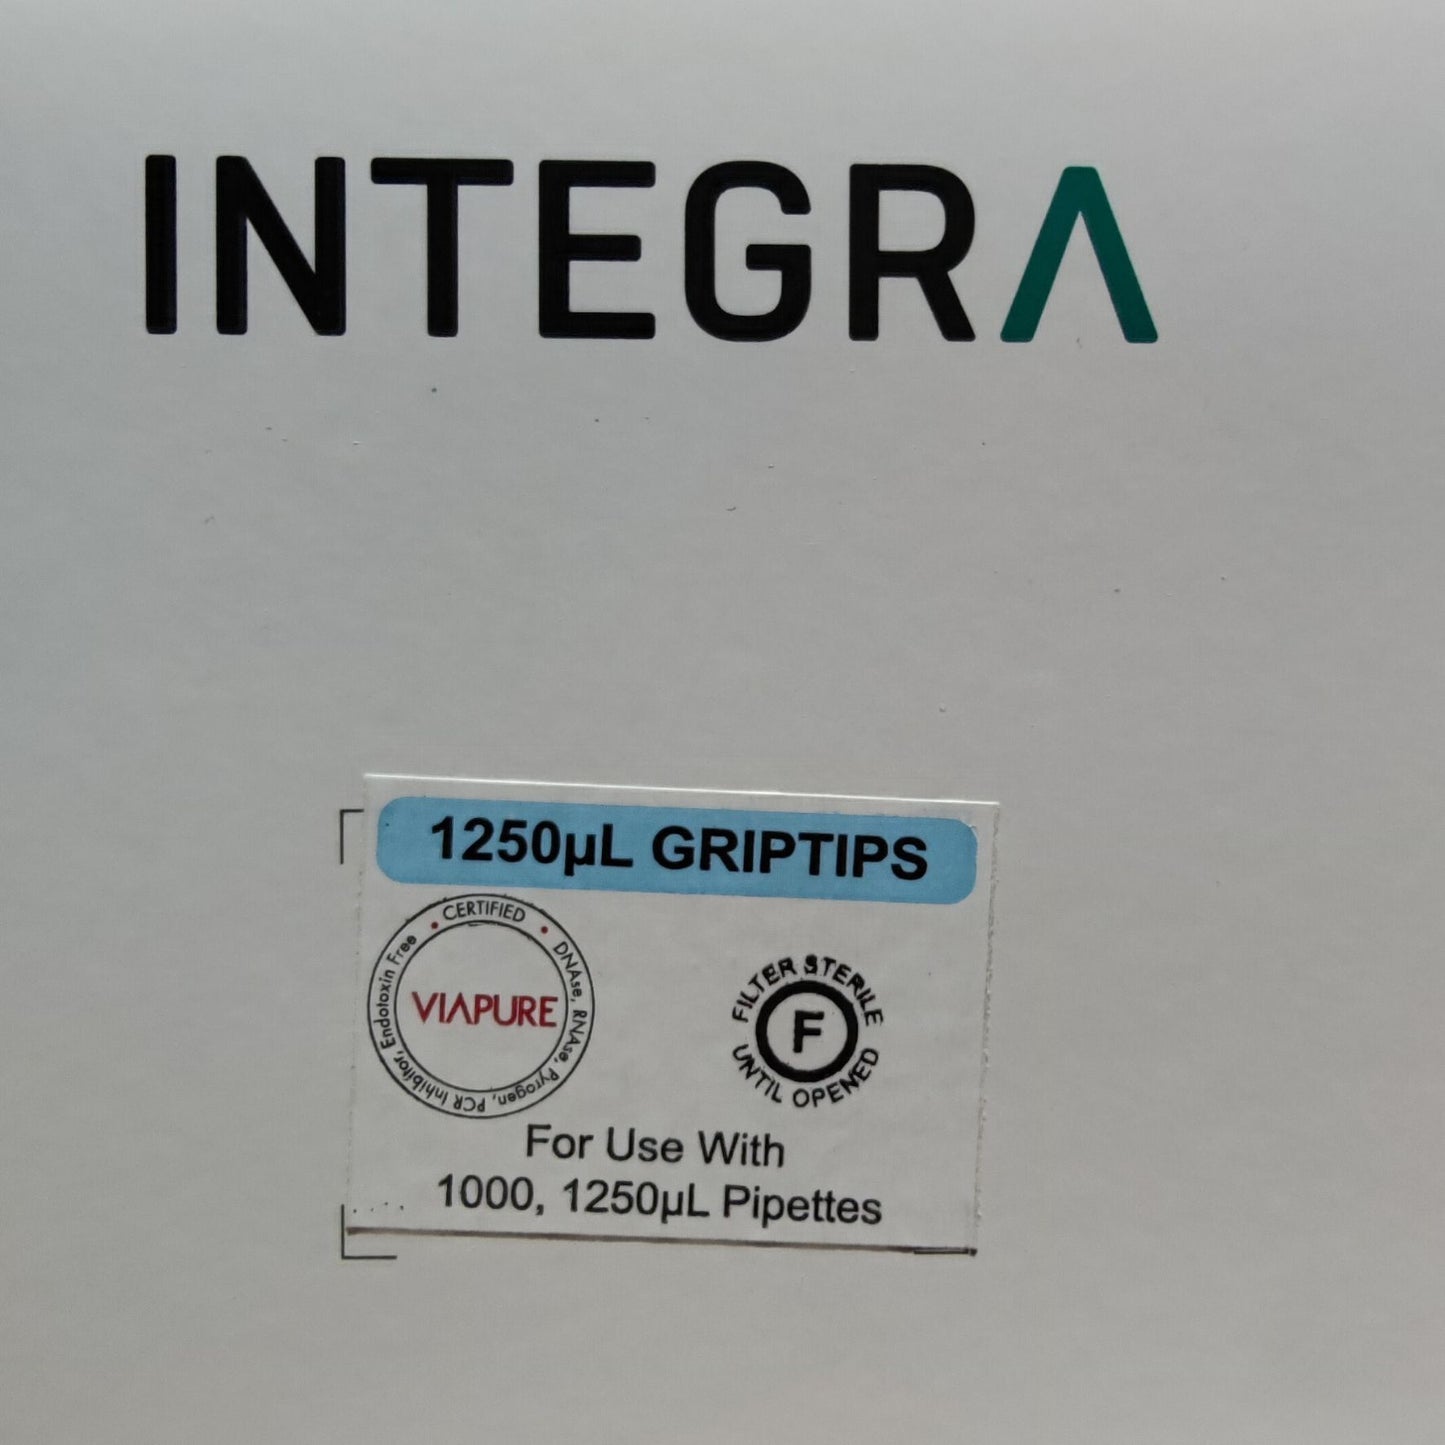 Integra - 1250 ul GRIPTIP, Sterile, Filter 5 V96 Racks of 96 Tips - Overpack of 4 cases (6445)